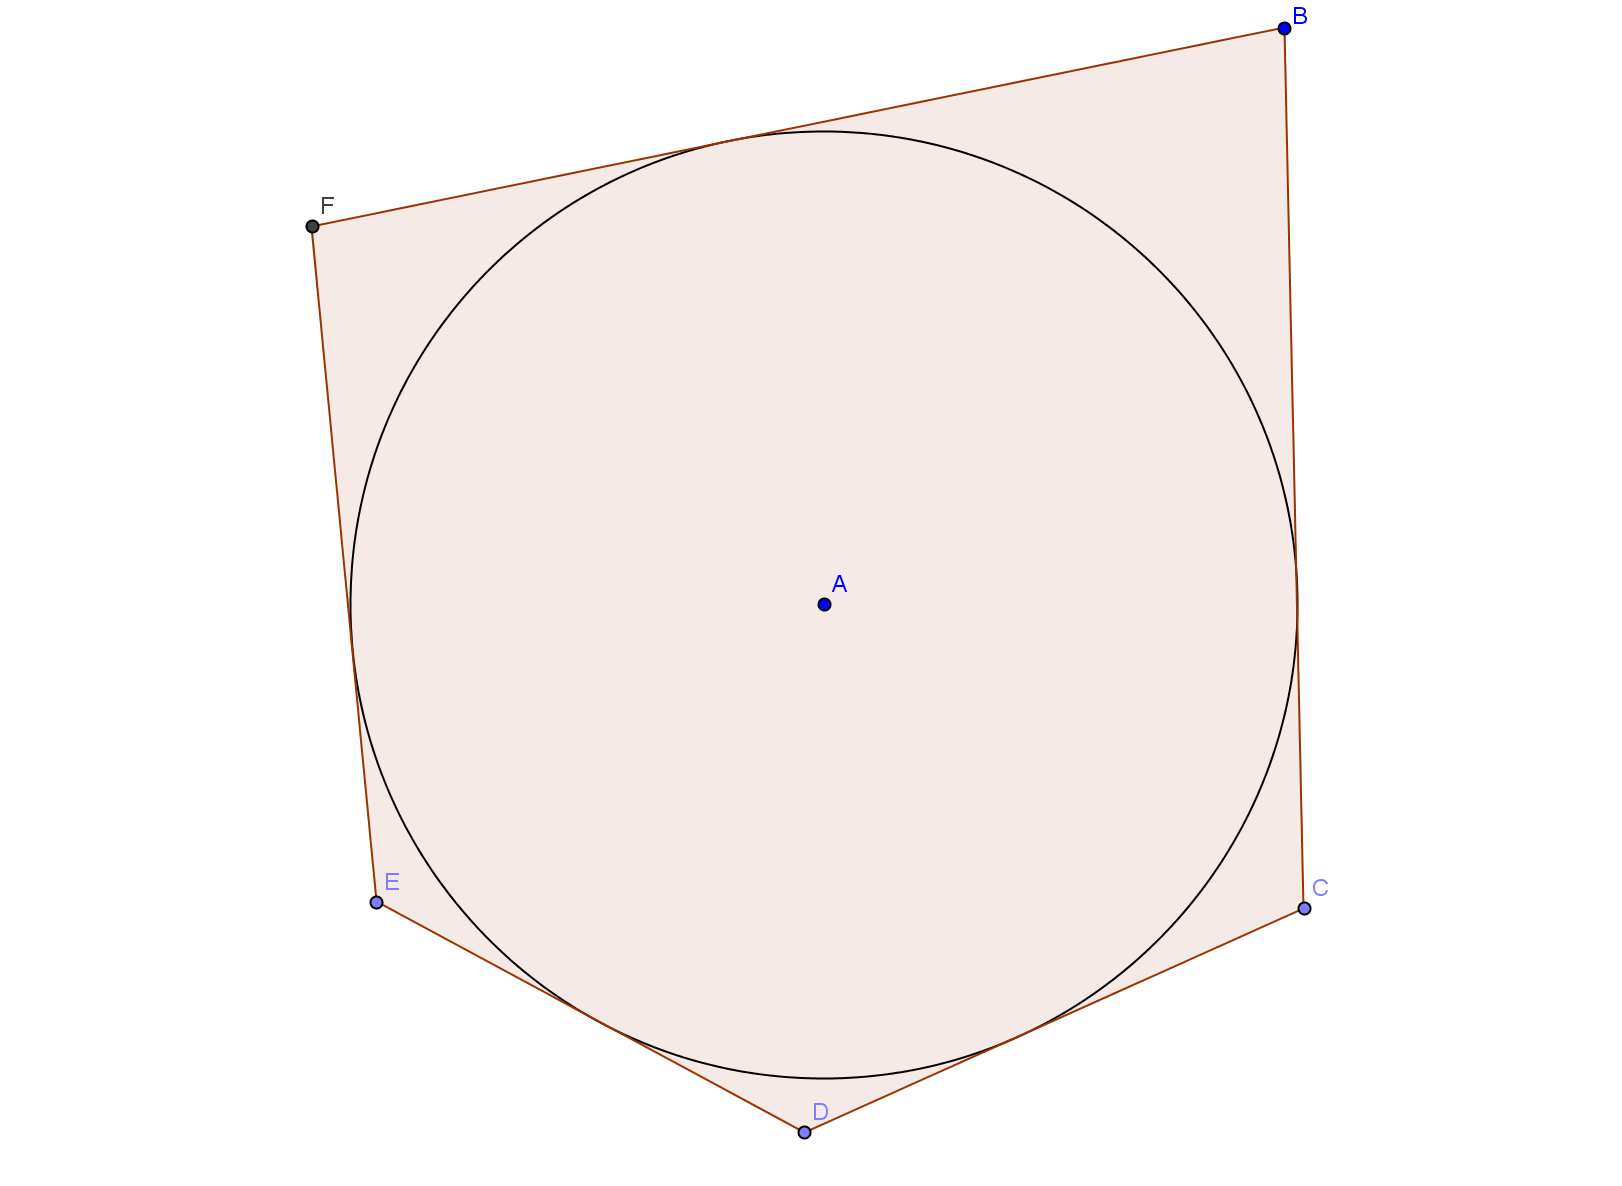 Teorema Si indichino con e i centri di due circonferenze e con r e r i loro raggi. In tal caso valgono le seguenti doppie implicazioni: Le circonferenze sono esterne se e solo se >r+r.